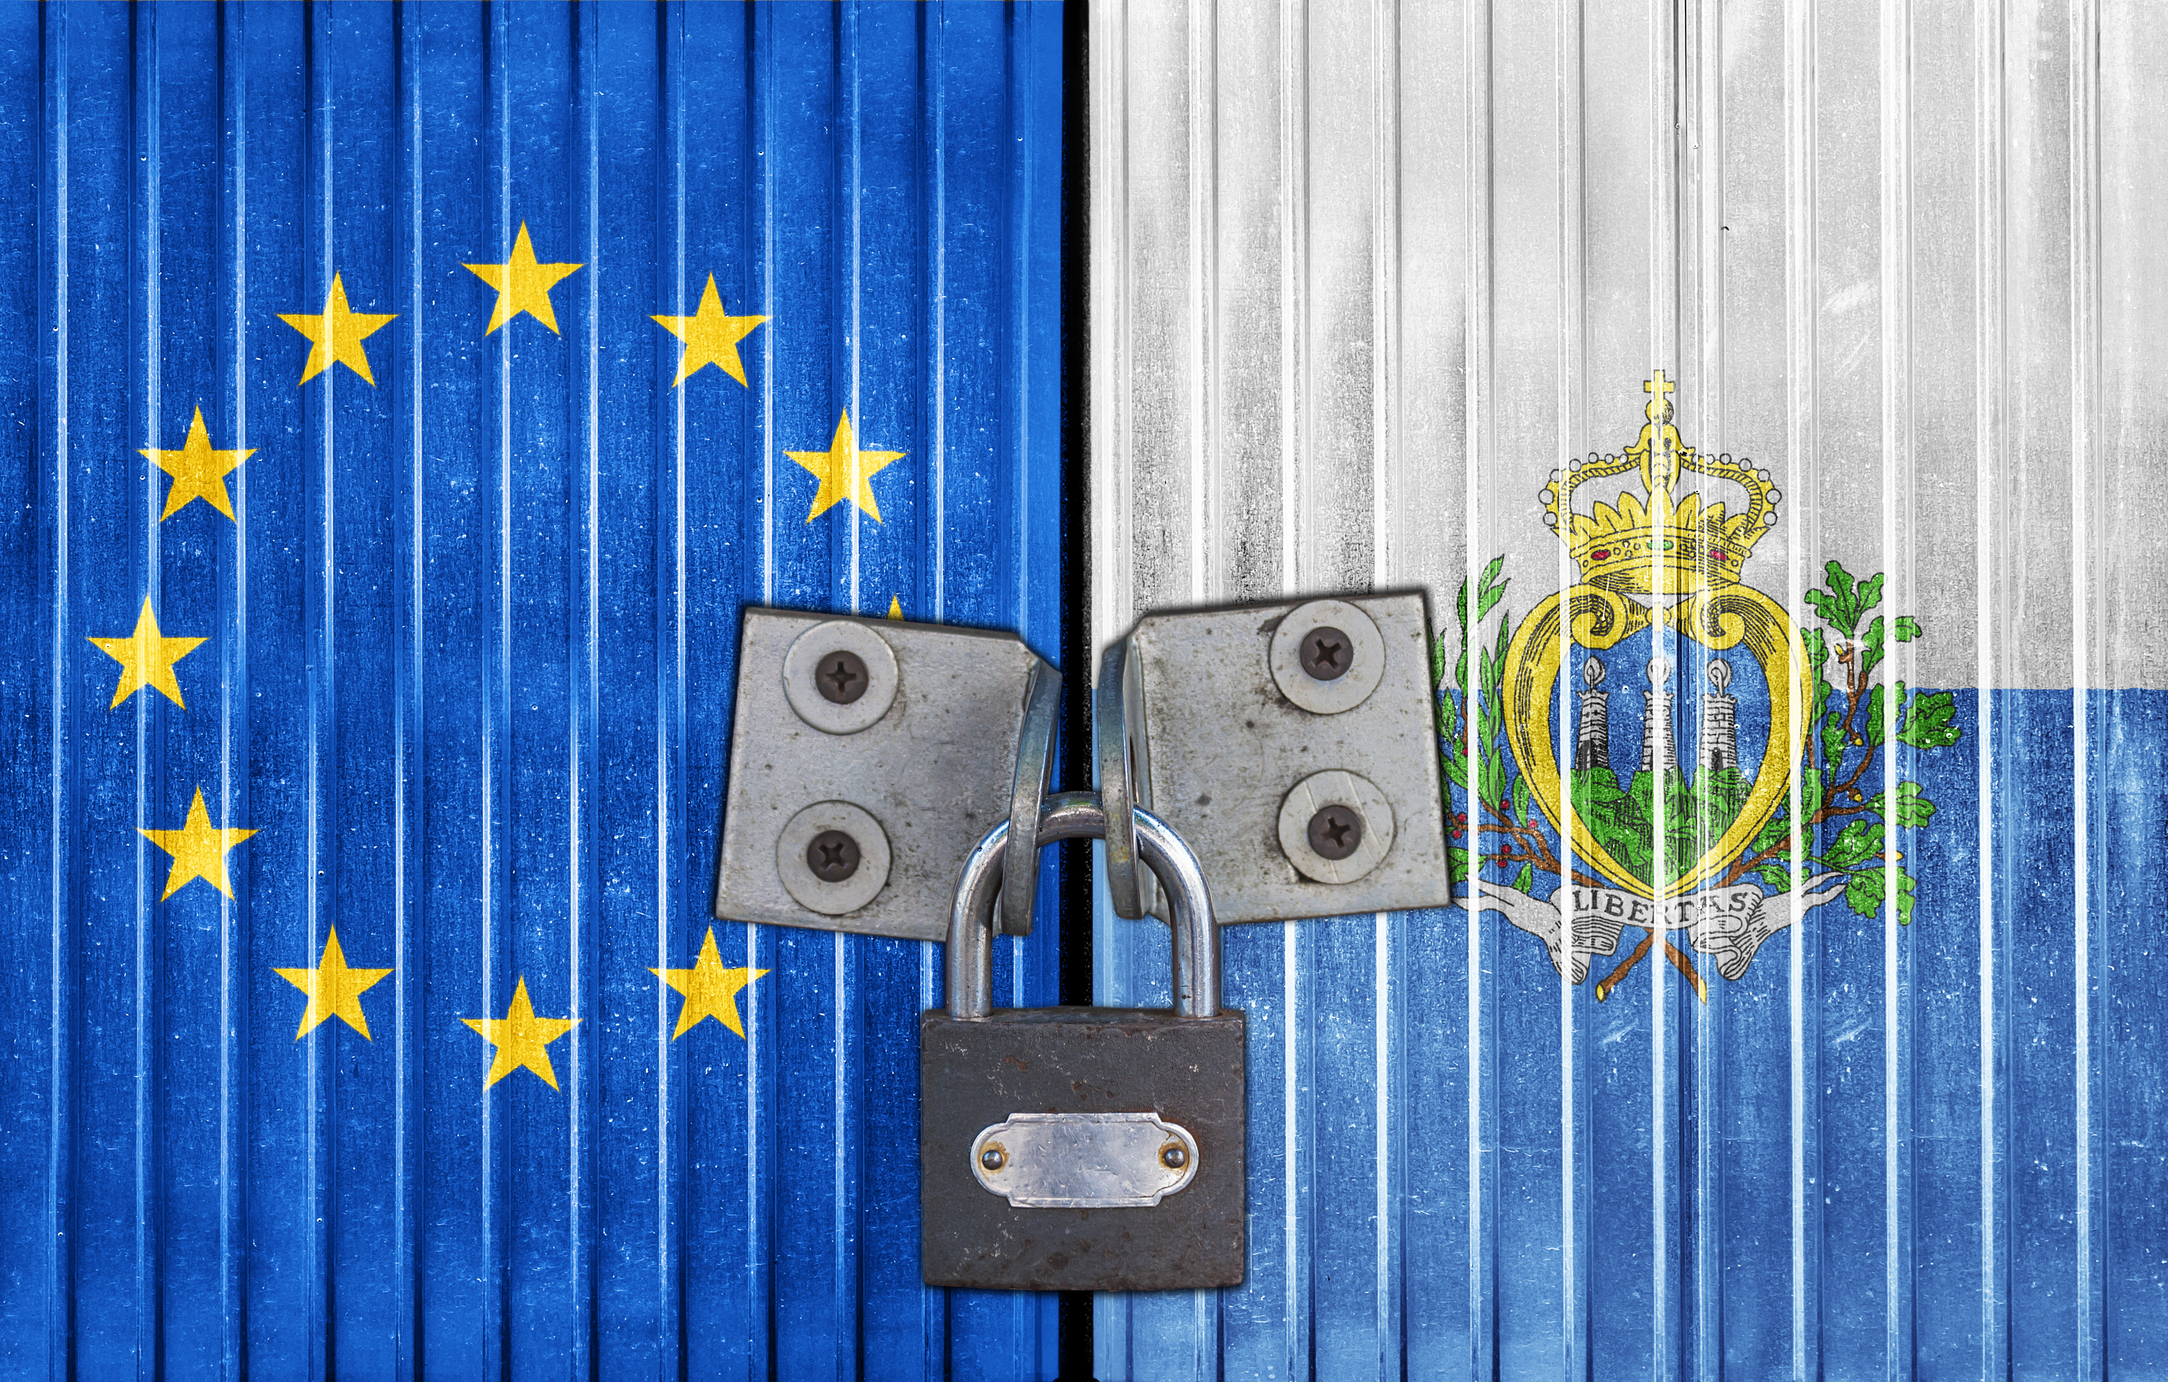 Chiar dacă nu face parte din Uniunea Europeană, San Marino este un stat cu foarte strânse legături cu numeroase state din blocul comunitar (sursă foto: dreamstime)